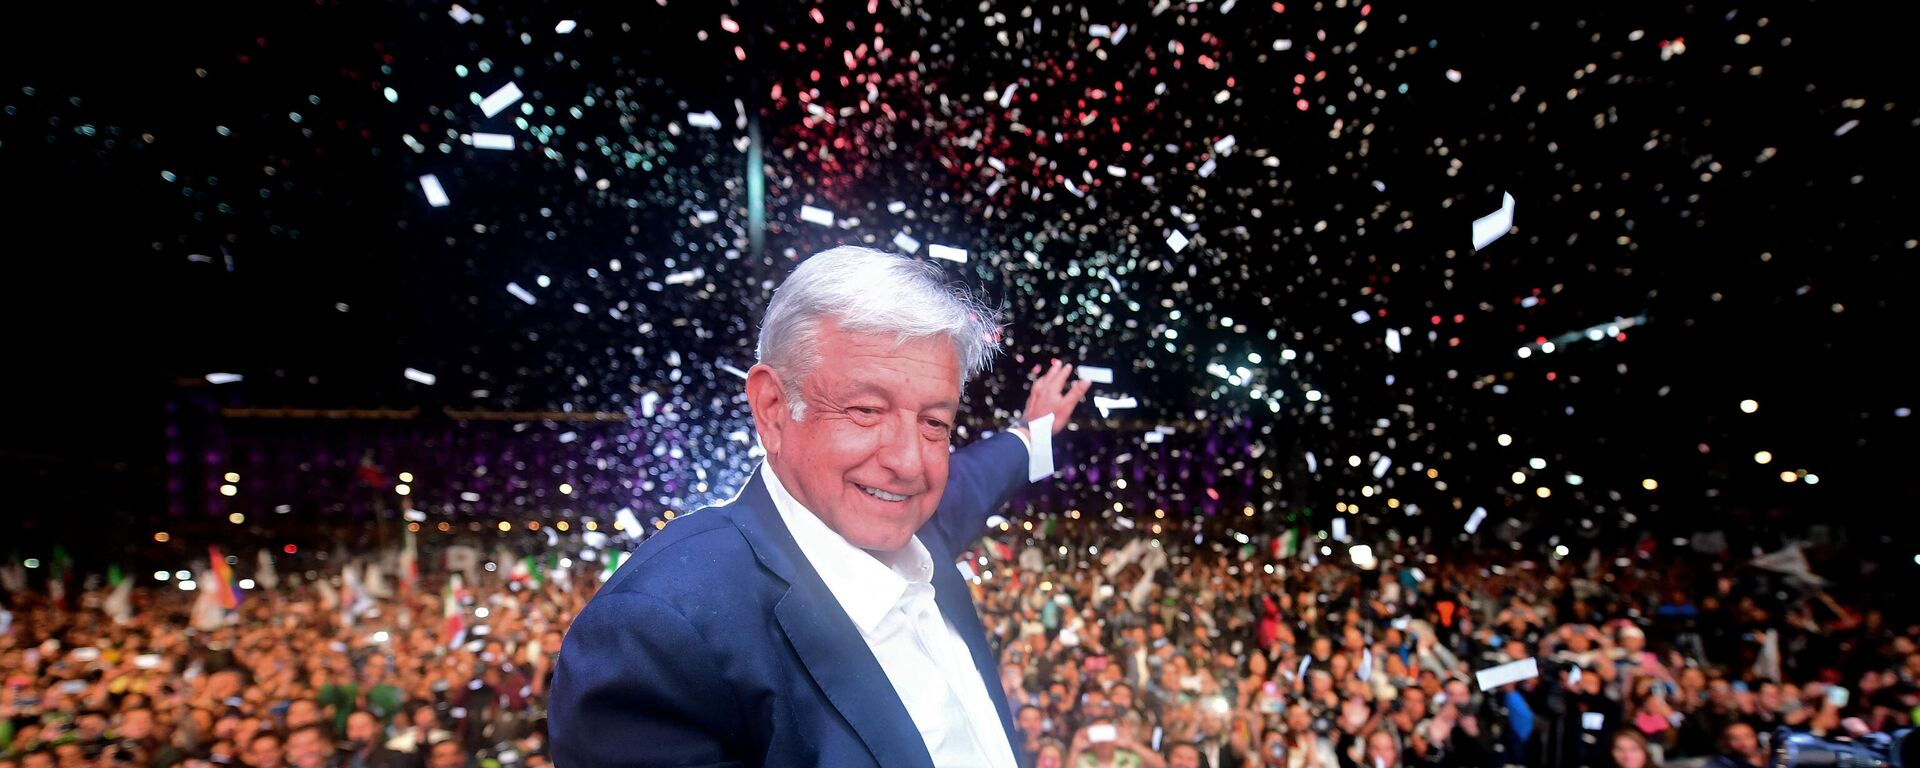 Andrés Manuel López Obrador, presidente de México - Sputnik Mundo, 1920, 13.11.2021